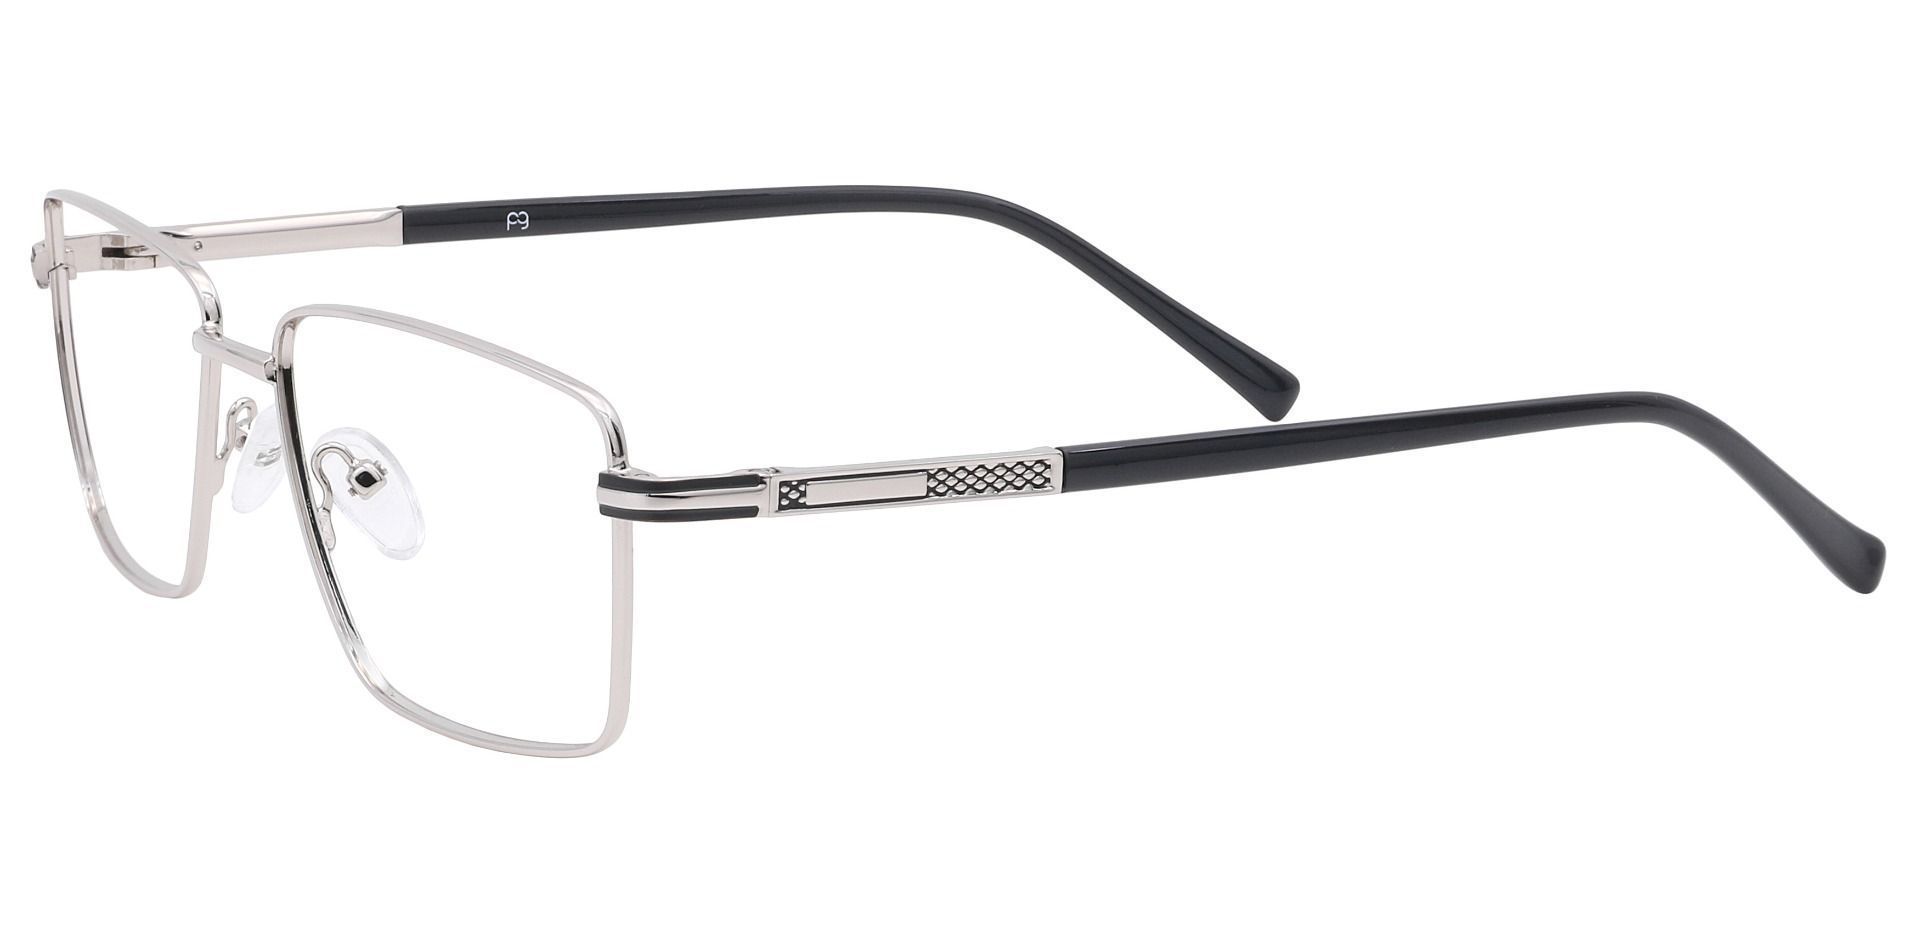 Daniel Rectangle Non-Rx Glasses - Silver